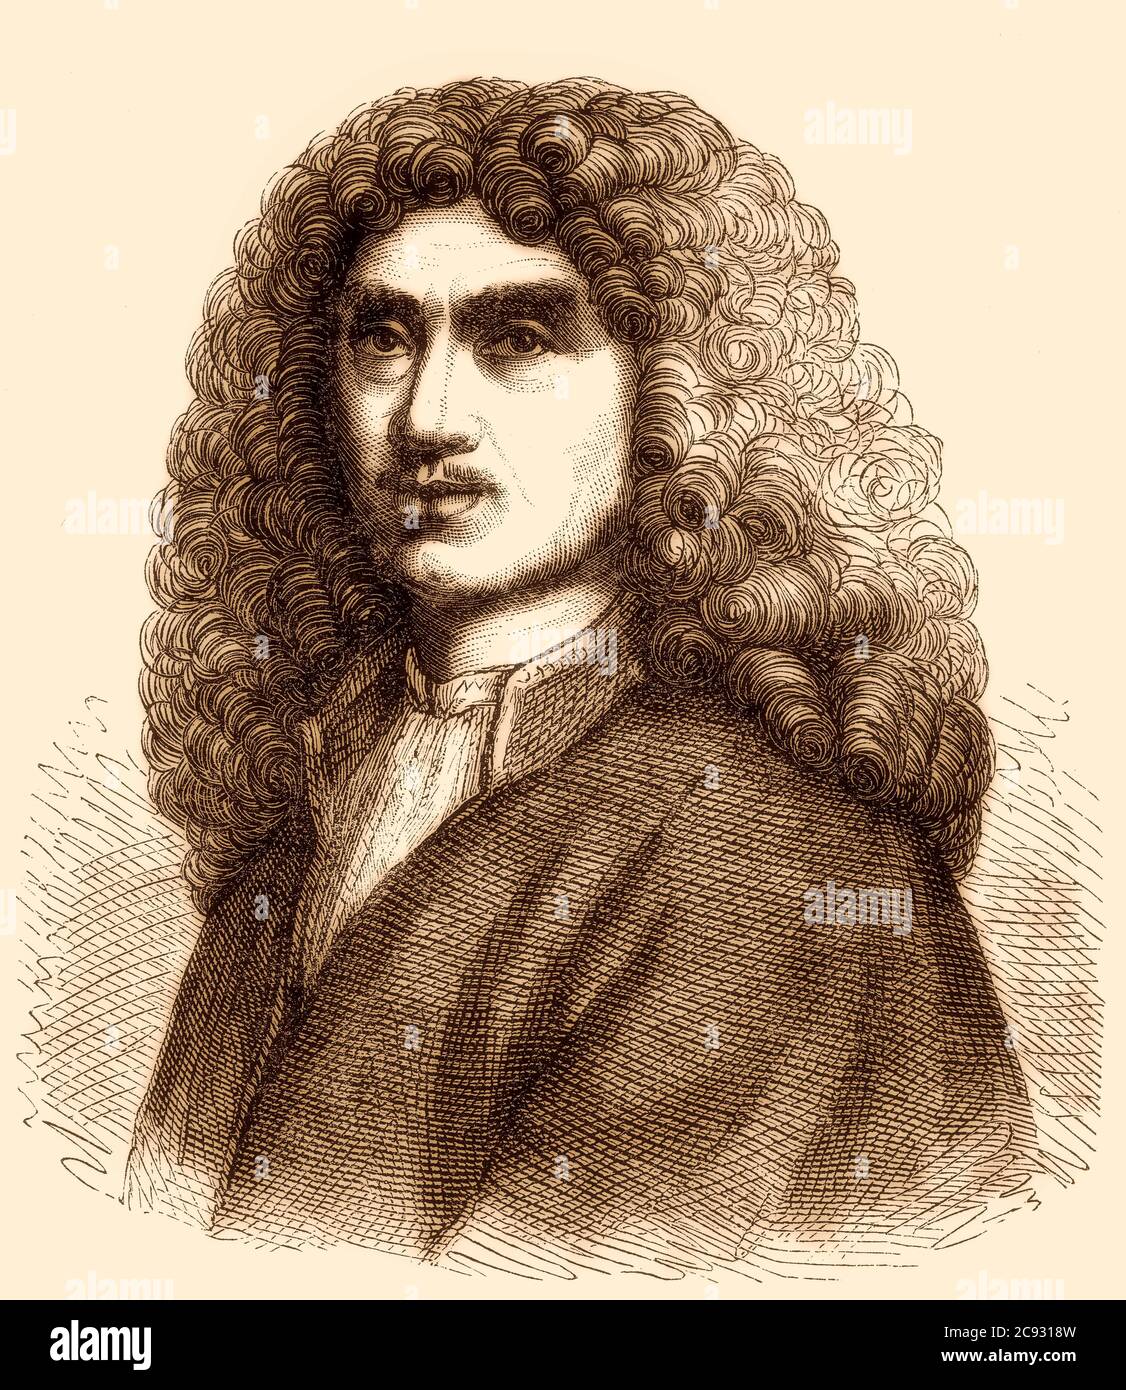 Jean-Baptiste Poquelin 1622-1673, bekannt als Molière, war ein französischer Dramatiker, Schauspieler und Dichter Stockfoto